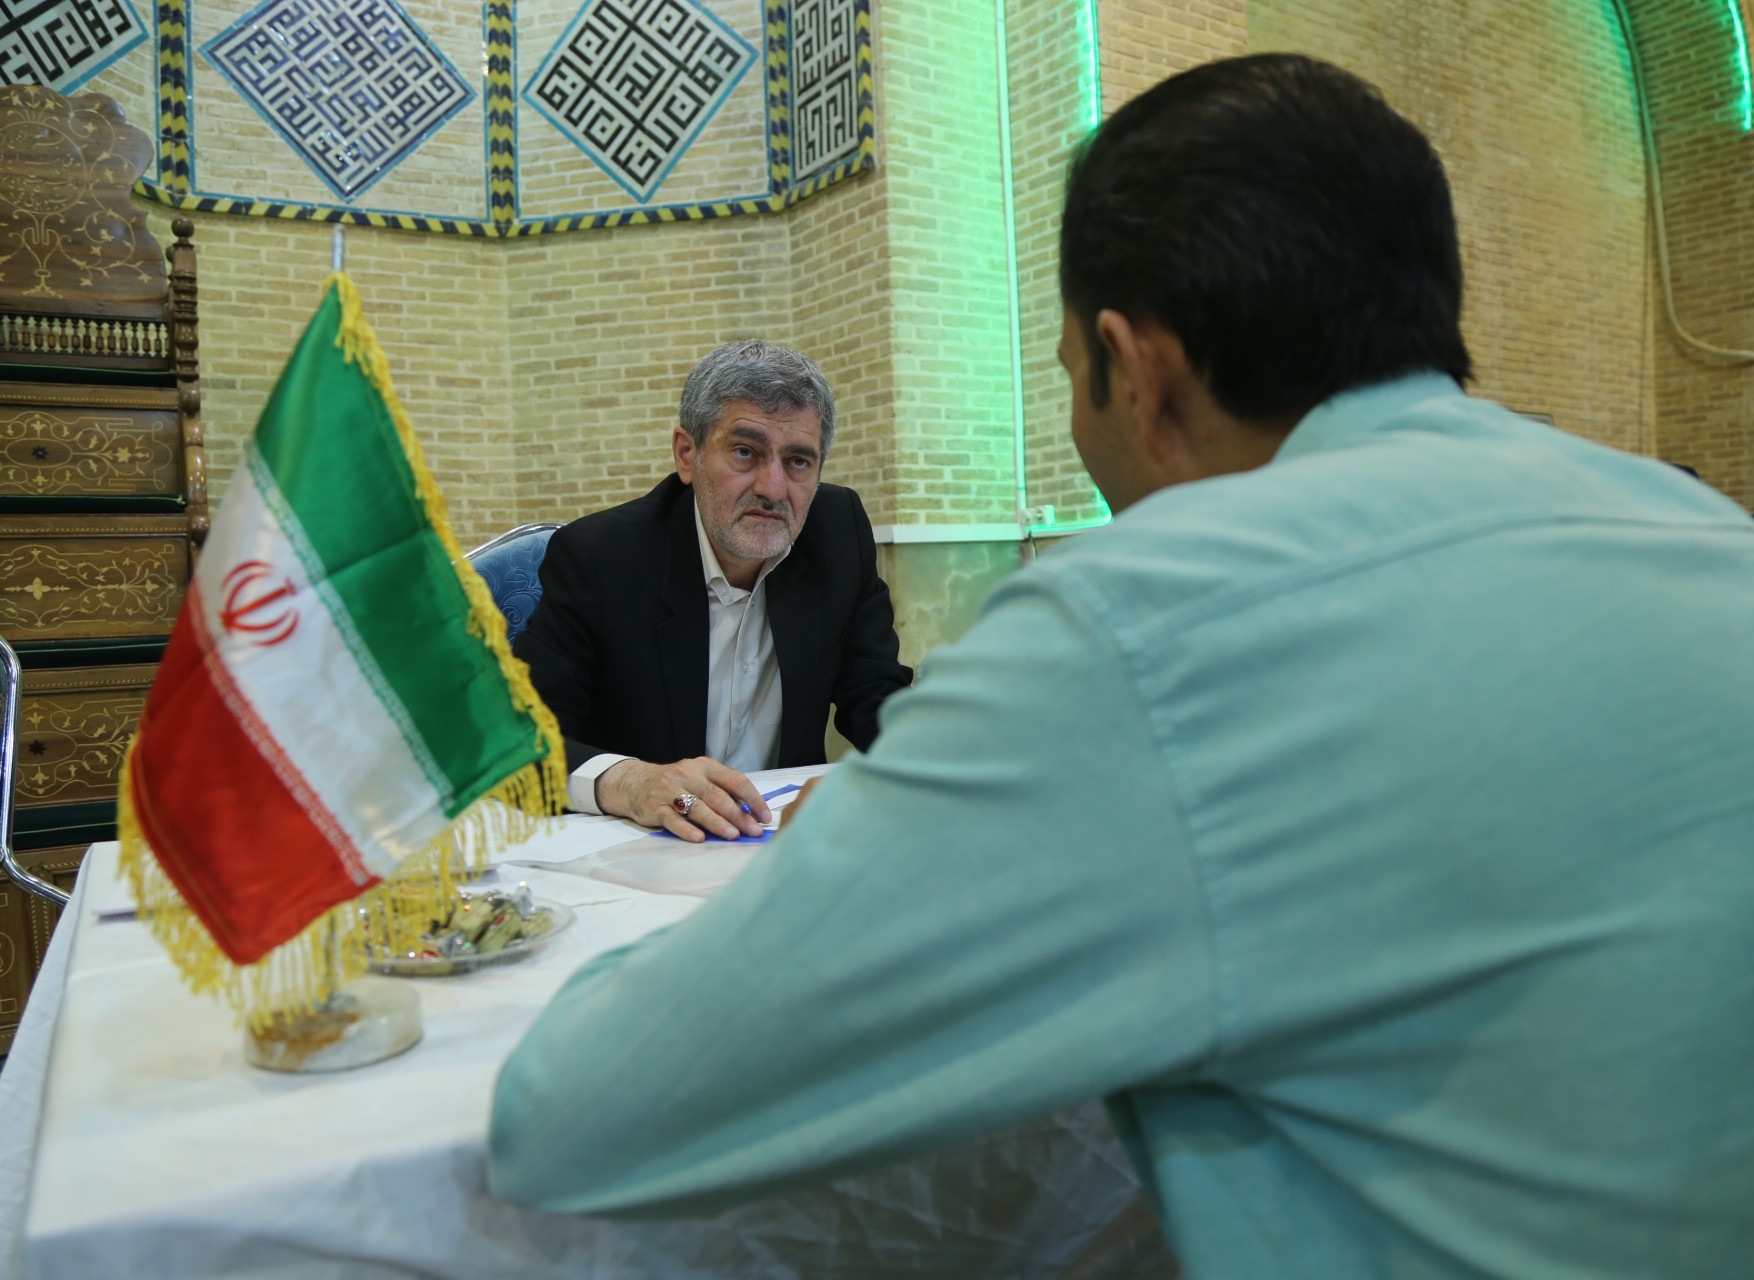 ملاقات عمومی استاندار فارس با مردم